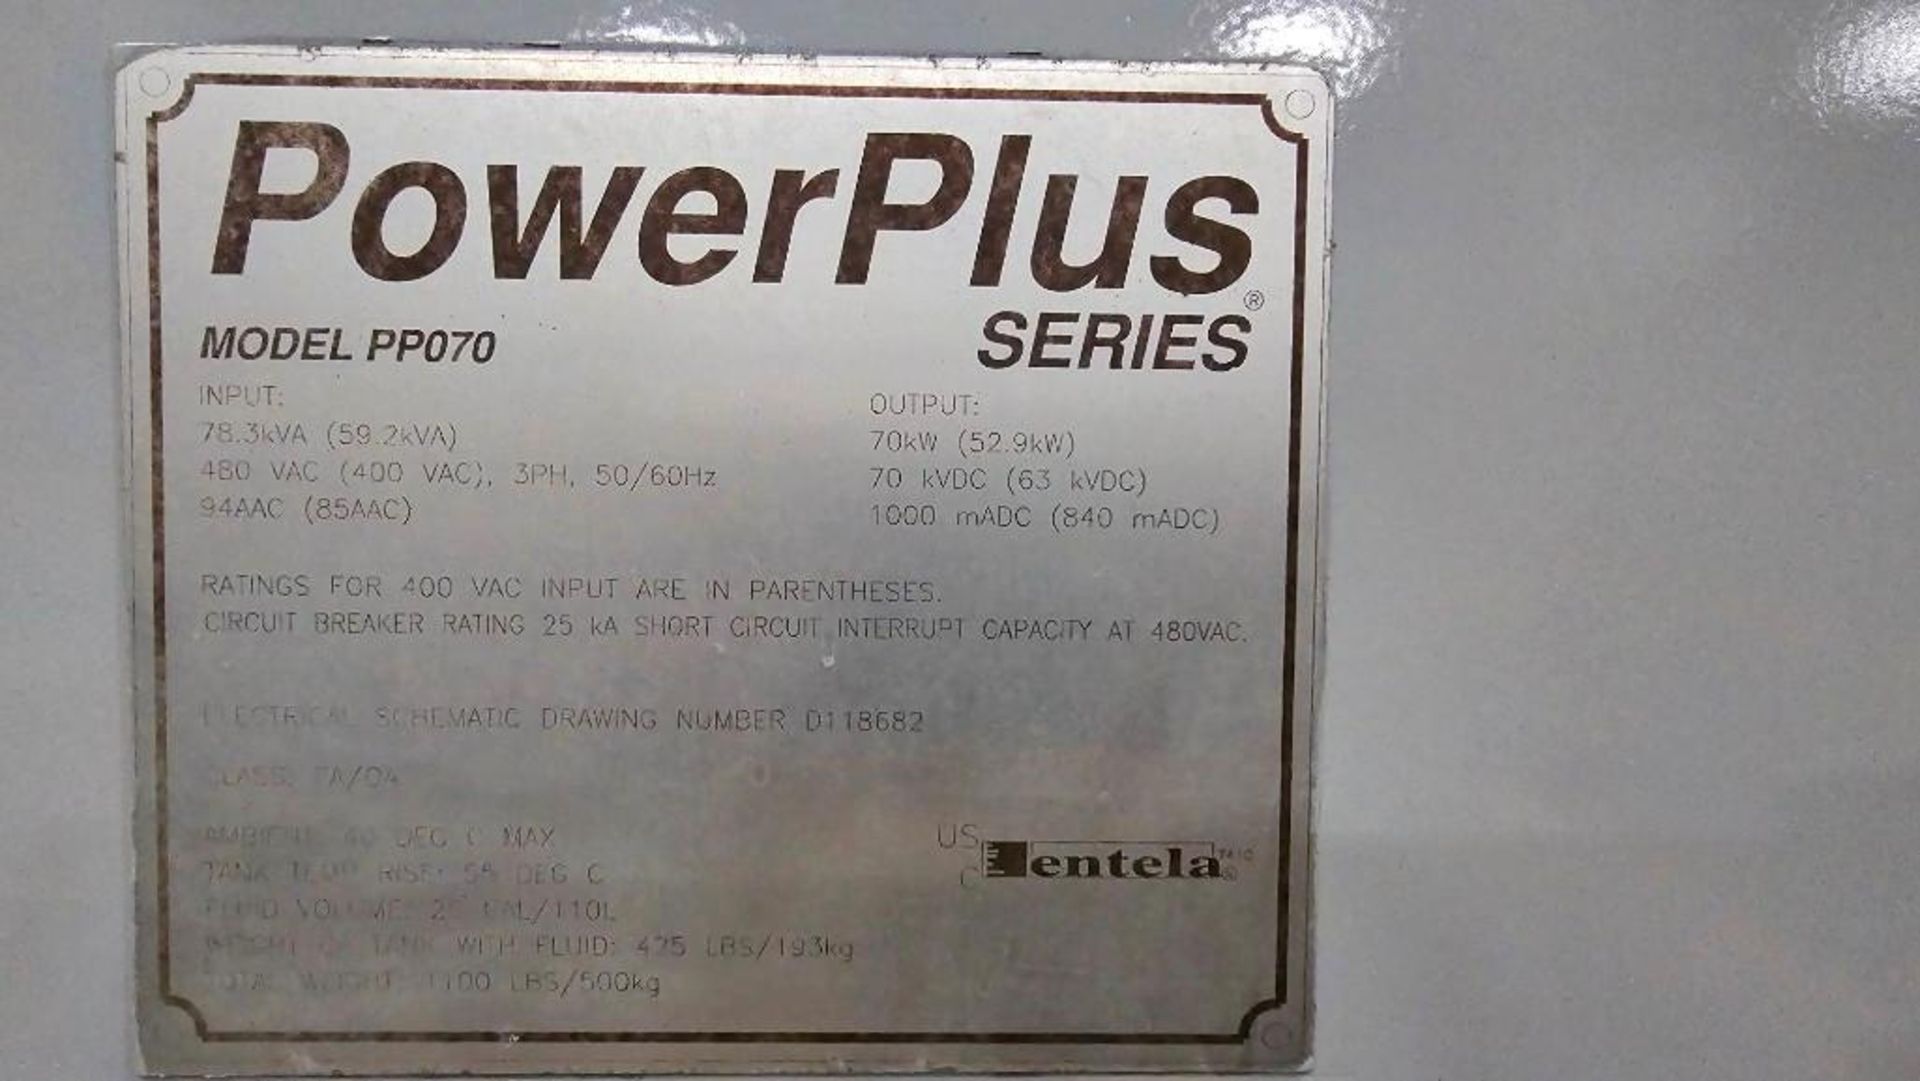 UNUSED POWERPLUS 480 VAC PP070, ELECTROSTATIC PRECIPITATOR 70KW POWER SUPPLY, 3PH, 78.3KVA - Image 6 of 7